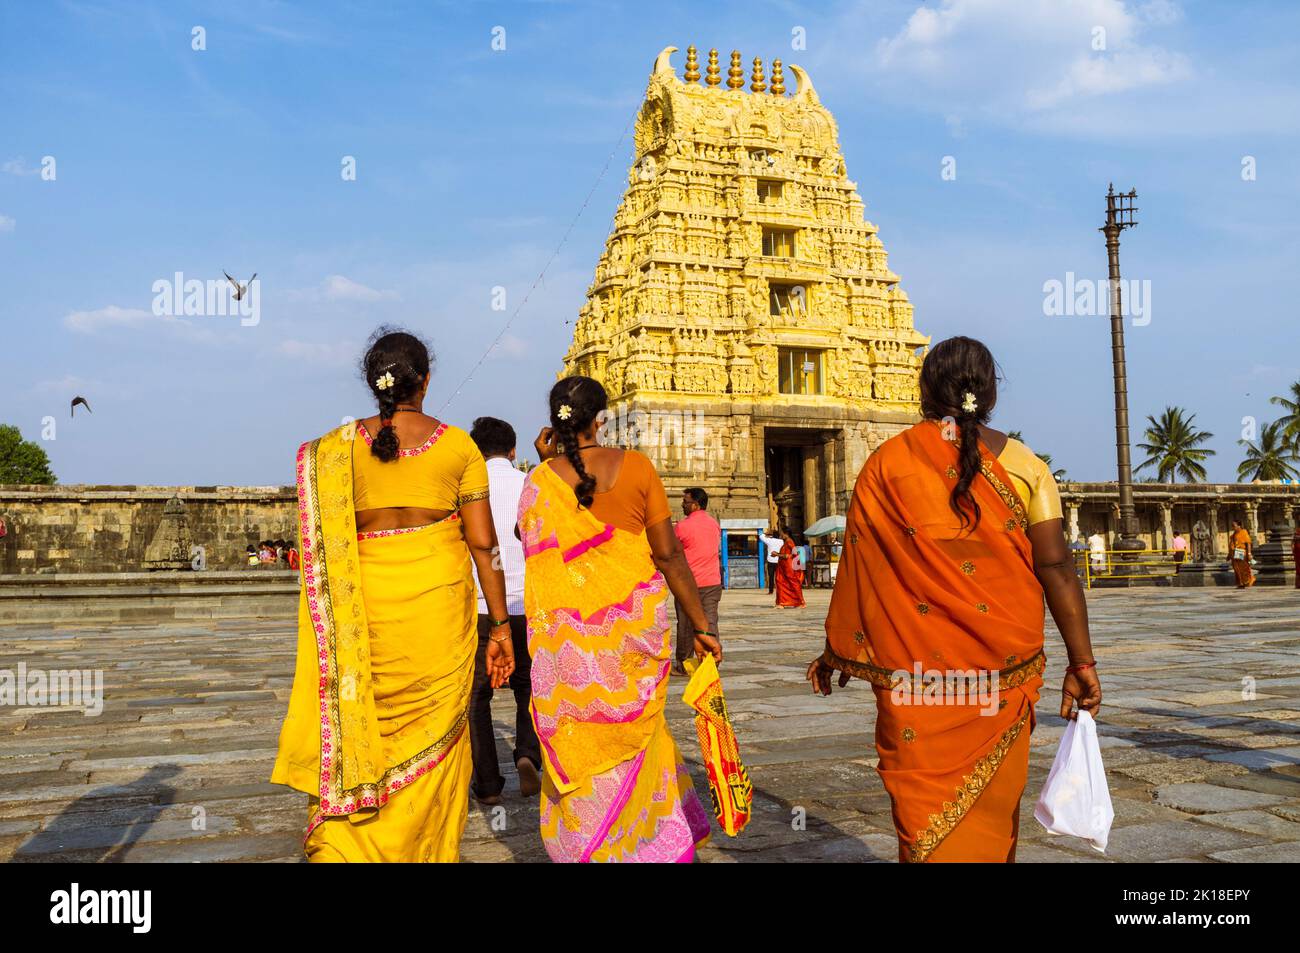 Belur, Karnataka, India : Tres mujeres en saris coloridos caminan hacia la puerta gopuram del templo Channakeshava del siglo 12th. Foto de stock